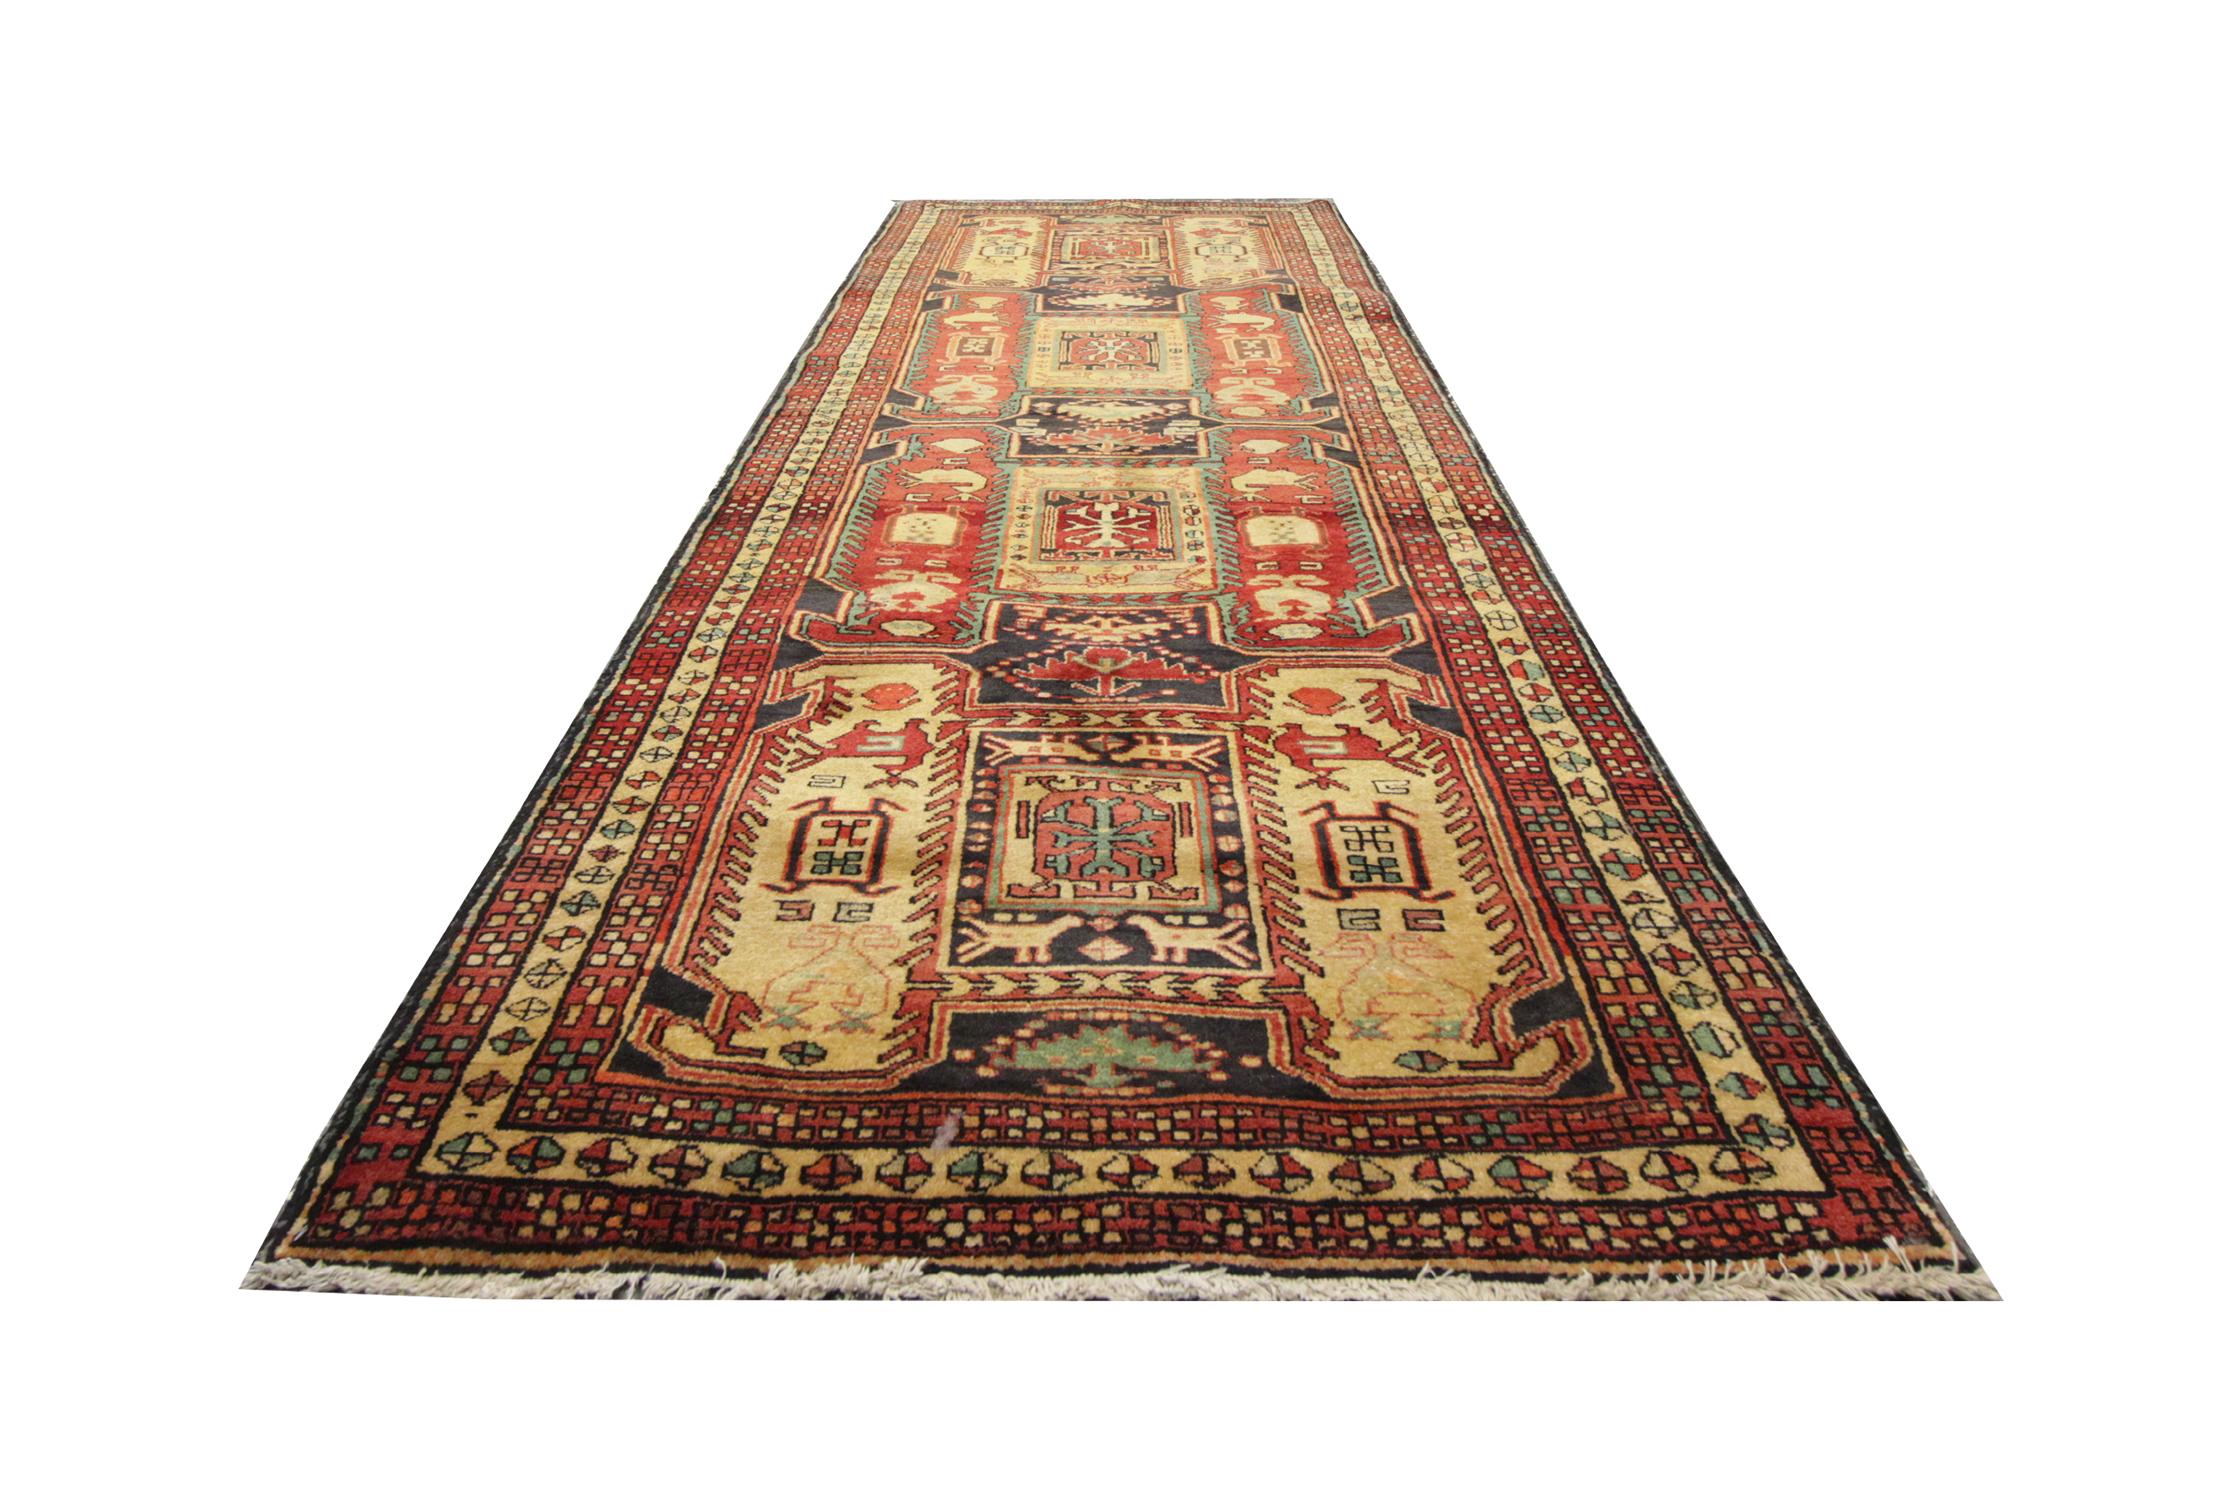 Ein hervorragendes Beispiel für kaukasische Orientteppiche stammt aus der kasachischen Region von Aserbaidschan. Obwohl diese goldbraun grundierten, gemusterten Teppiche aus der Ferne so aussehen mögen, hat dieser gewebte Teppich eine große